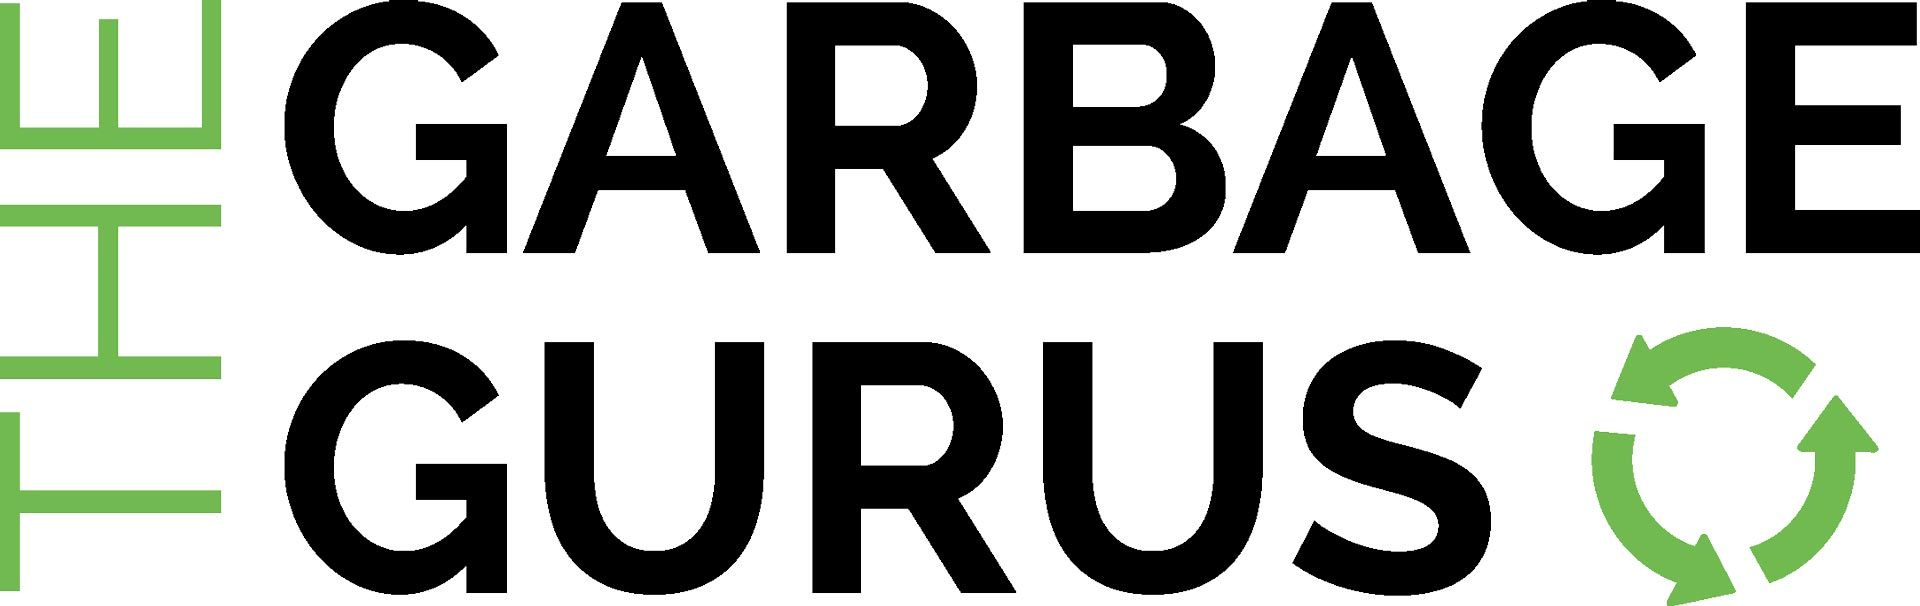 the garbage gurus logo